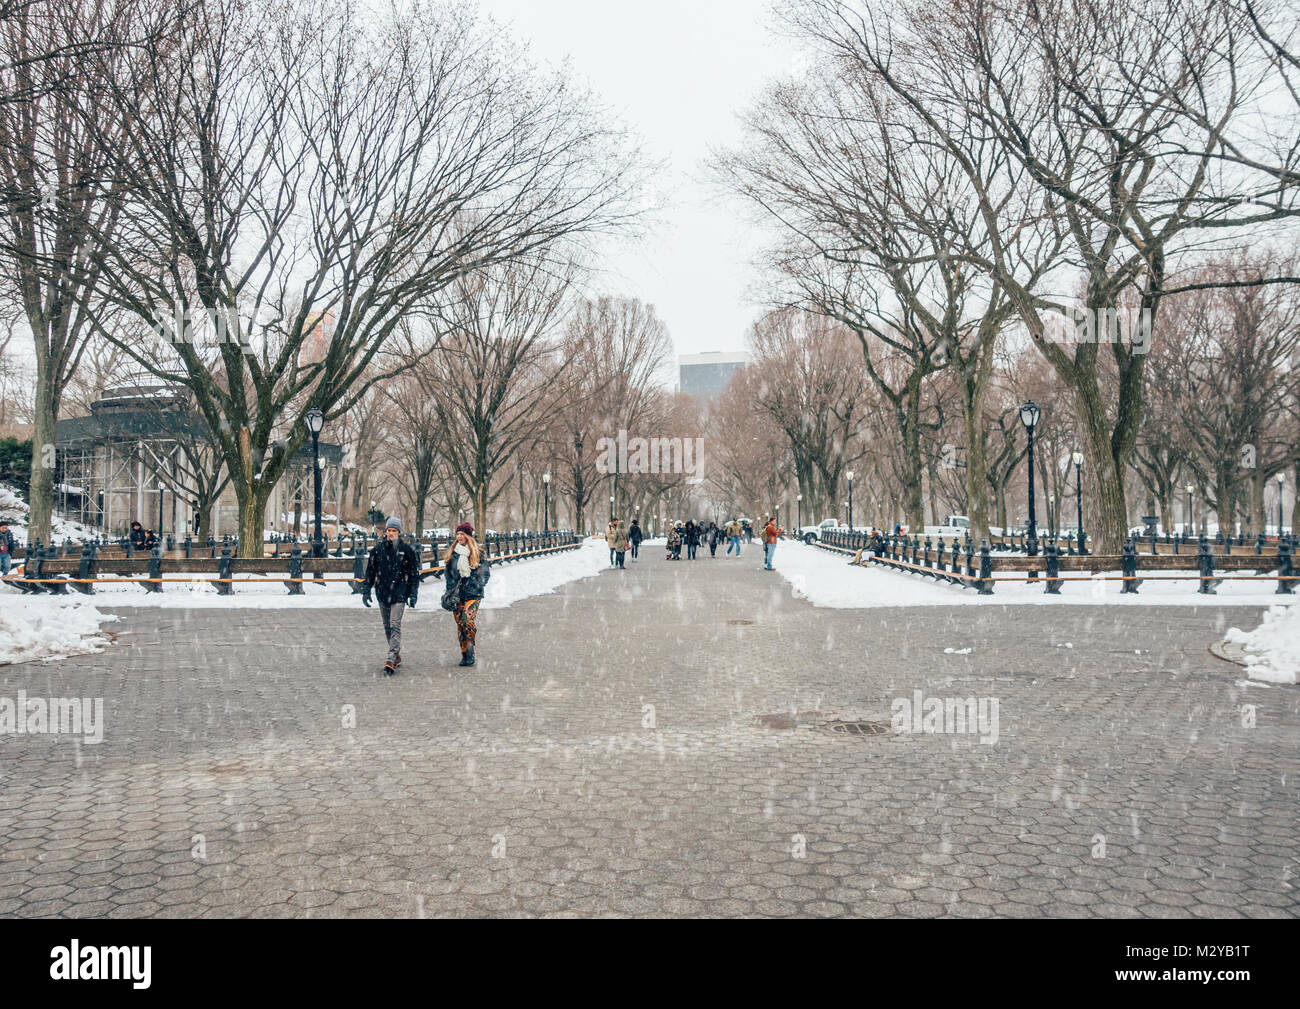 New York City, USA - 18. März 2017: Menschen schlendern und Jogger laufen auf der Mall im Central Park. Der Central Park ist die meisten städtischen Park in den USA besucht. Stockfoto